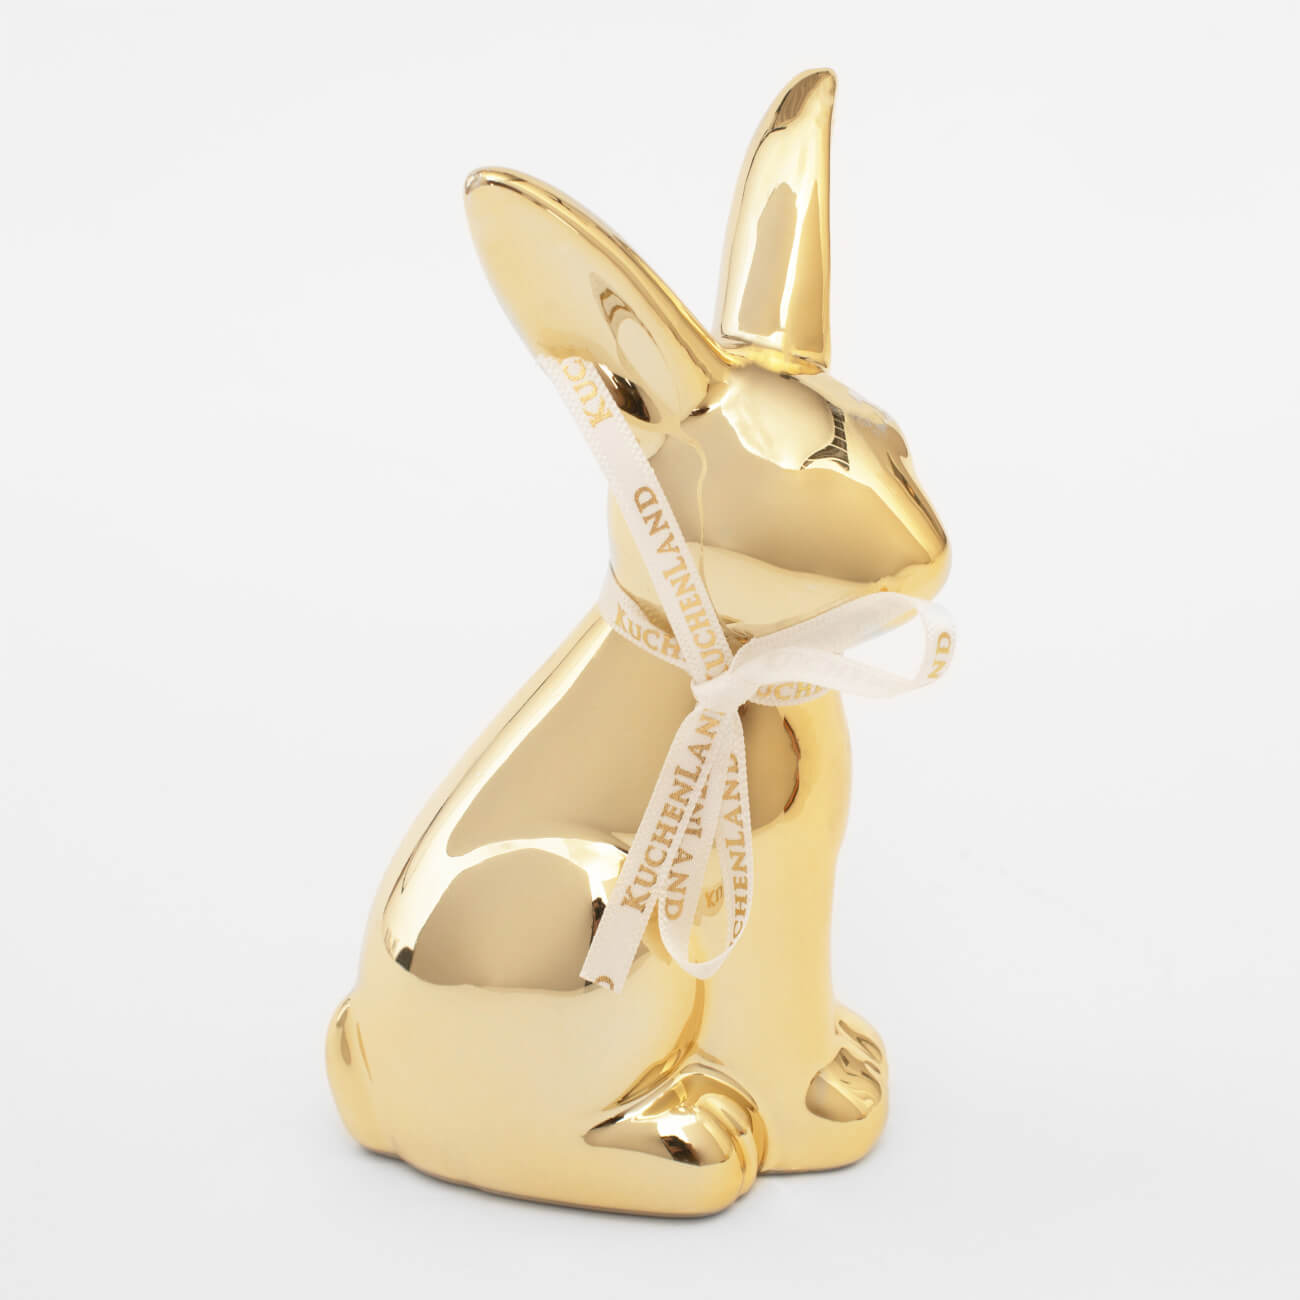 статуэтка 13 см полирезин бело золотистая кролик с очным ожерельем easter gold Статуэтка, 13 см, керамика, золотистая, Кролик, Easter gold